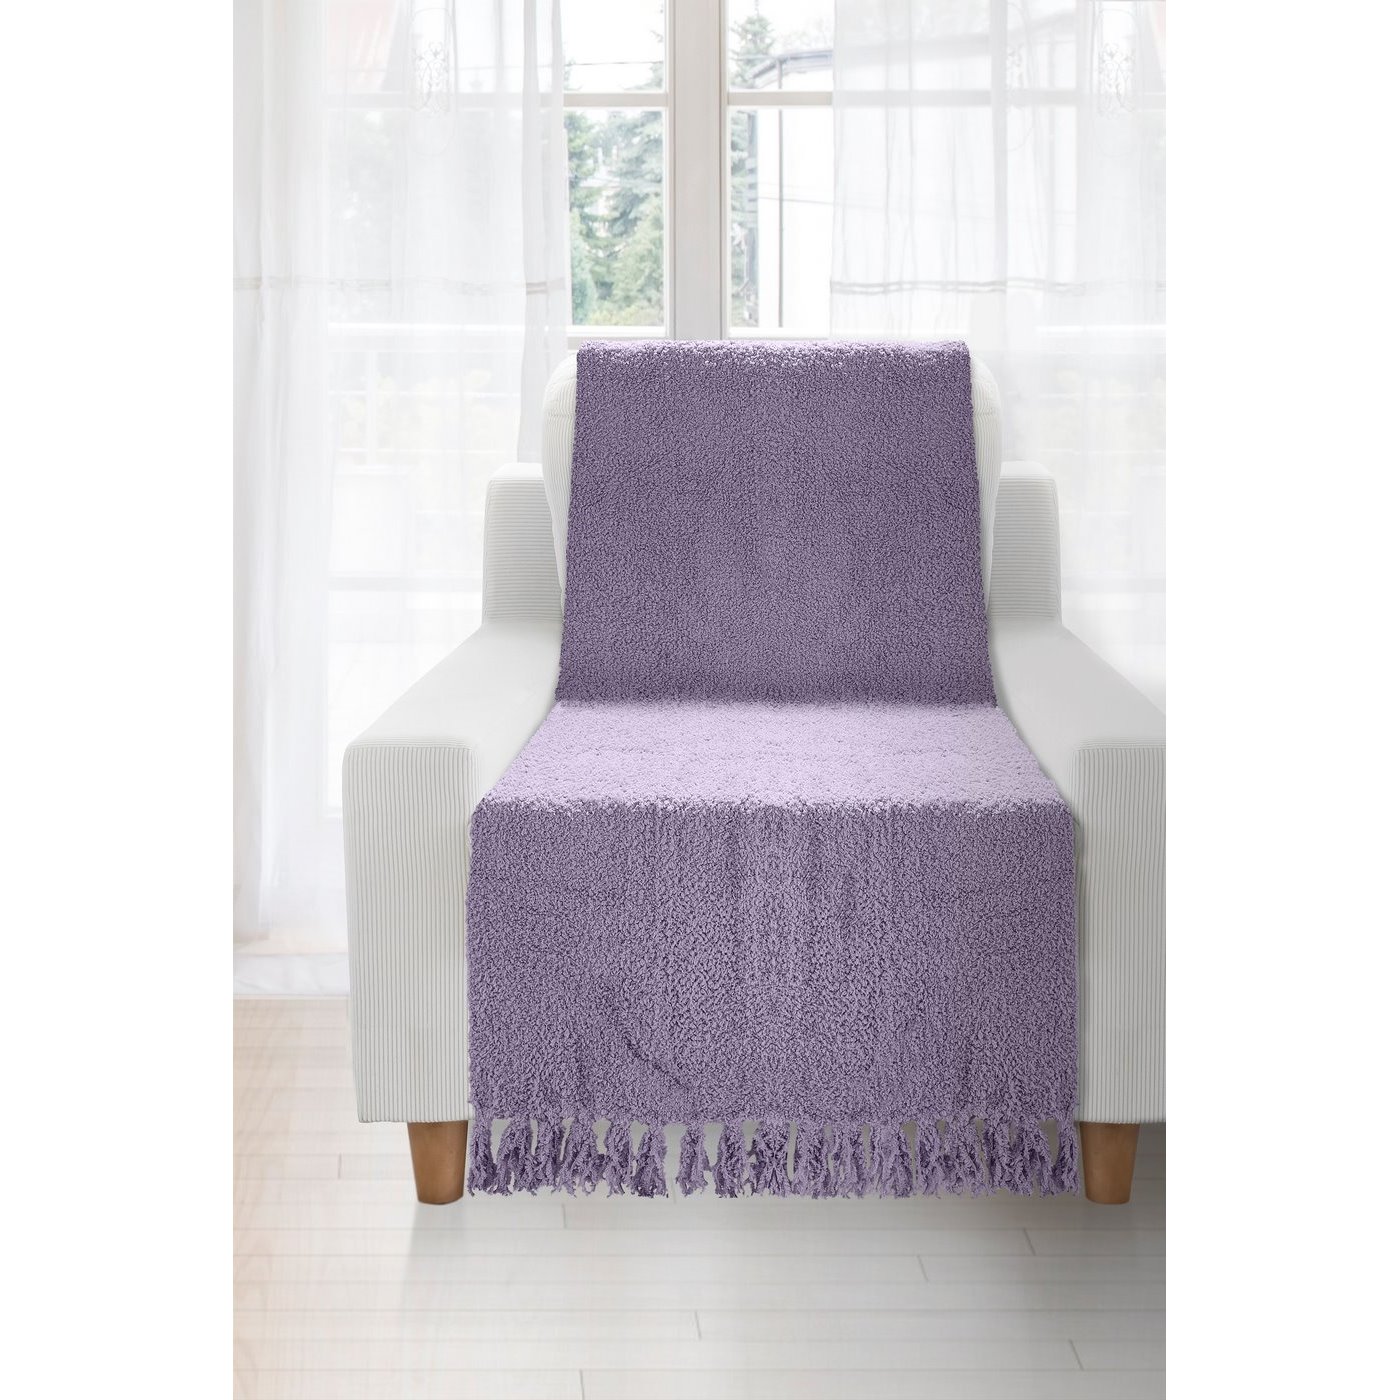 Koc miękki pled z frędzlami na fotel jednokolorowy fioletowy 70x150cm